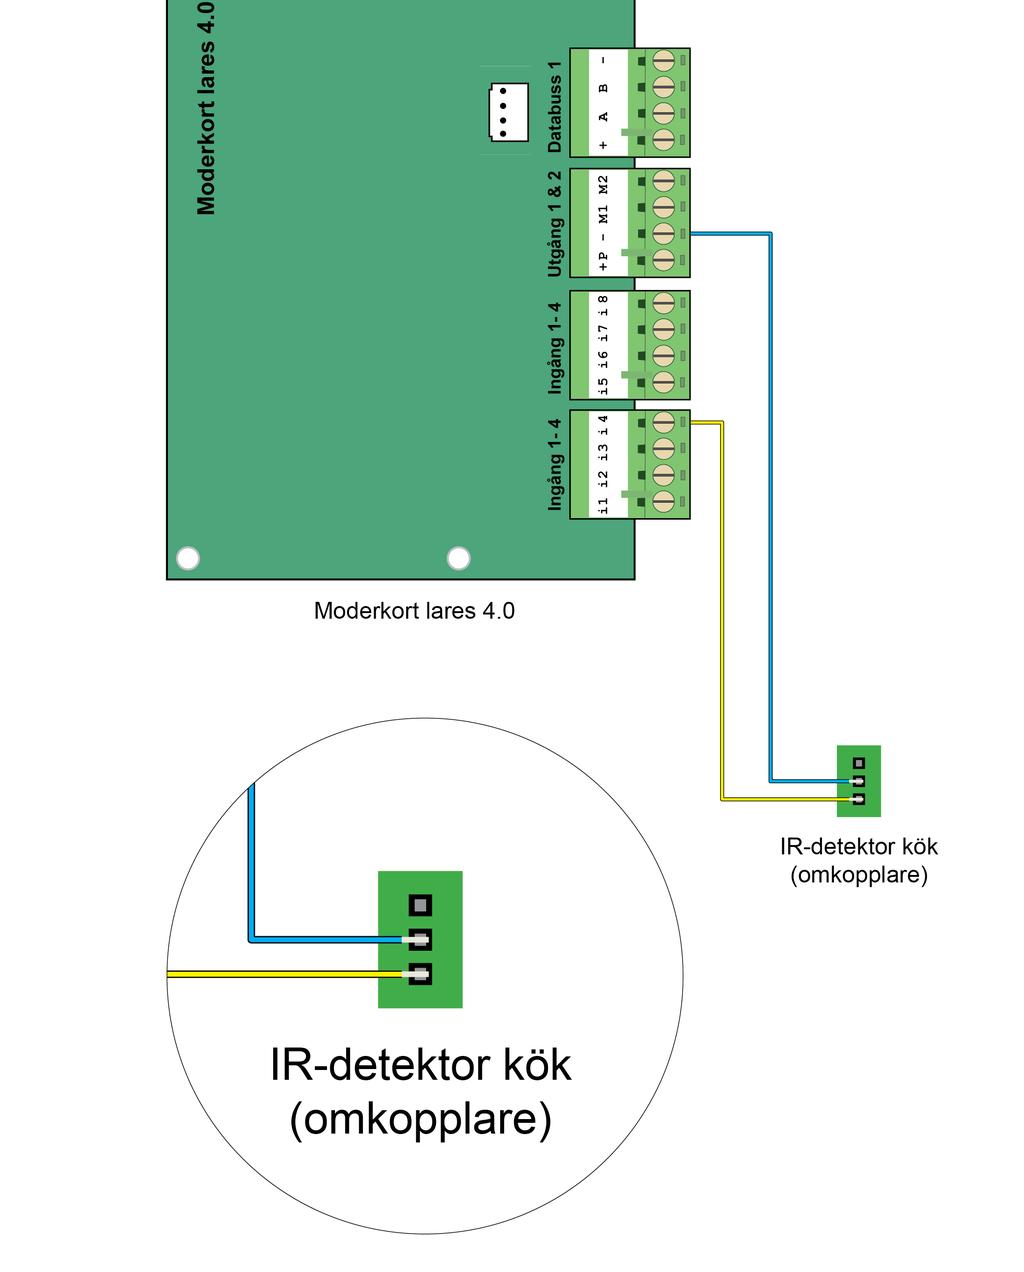 Steg 25 - Koppla in IR-detektor kök (omkopplare) till moderkort lares 4.